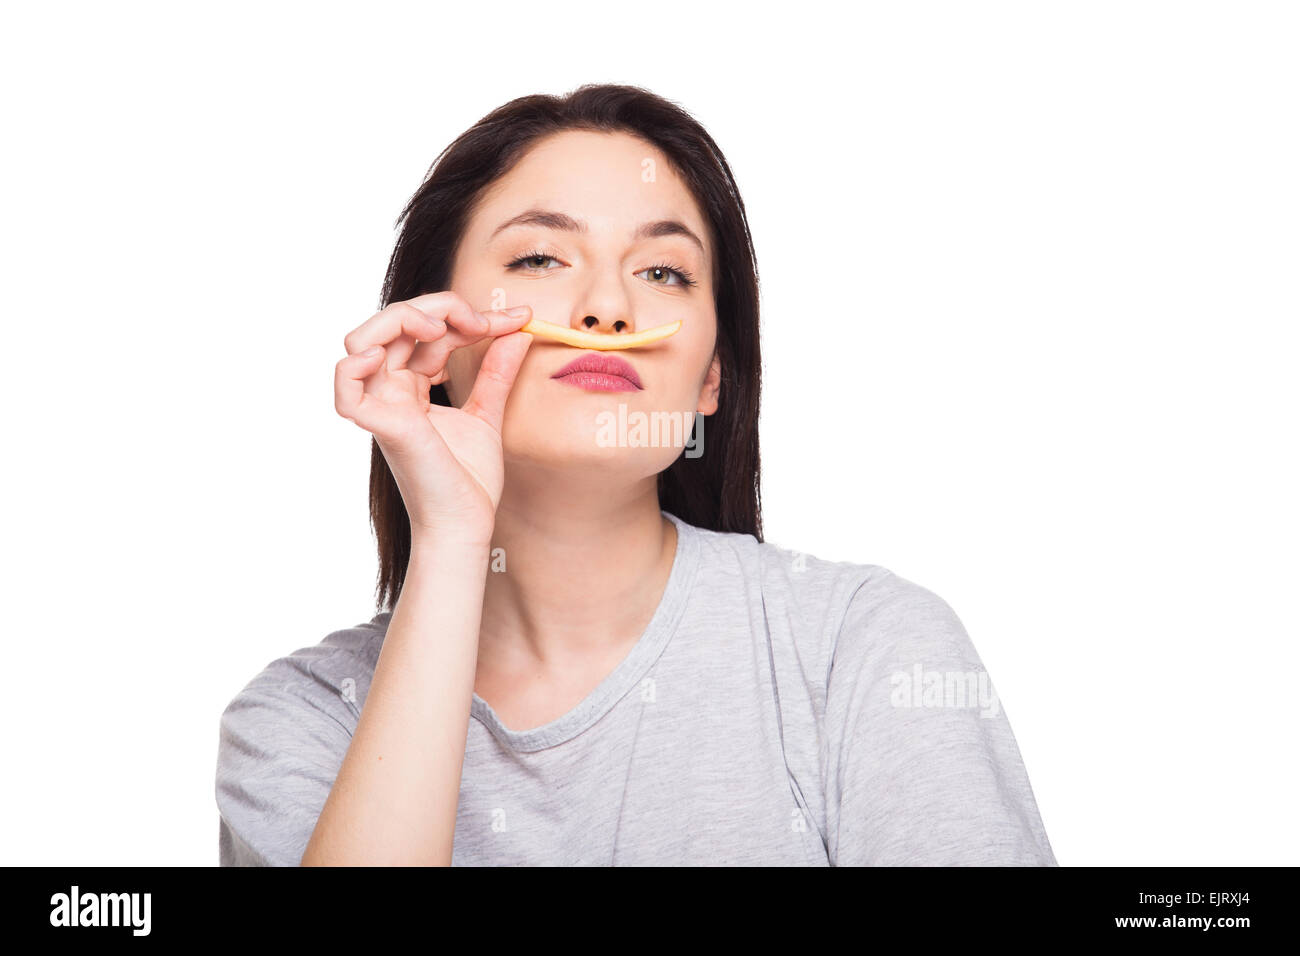 Naturale donna espressiva giocando con patatine fritte, avendo di fronte junk e cibo sano, isolato su bianco Foto Stock